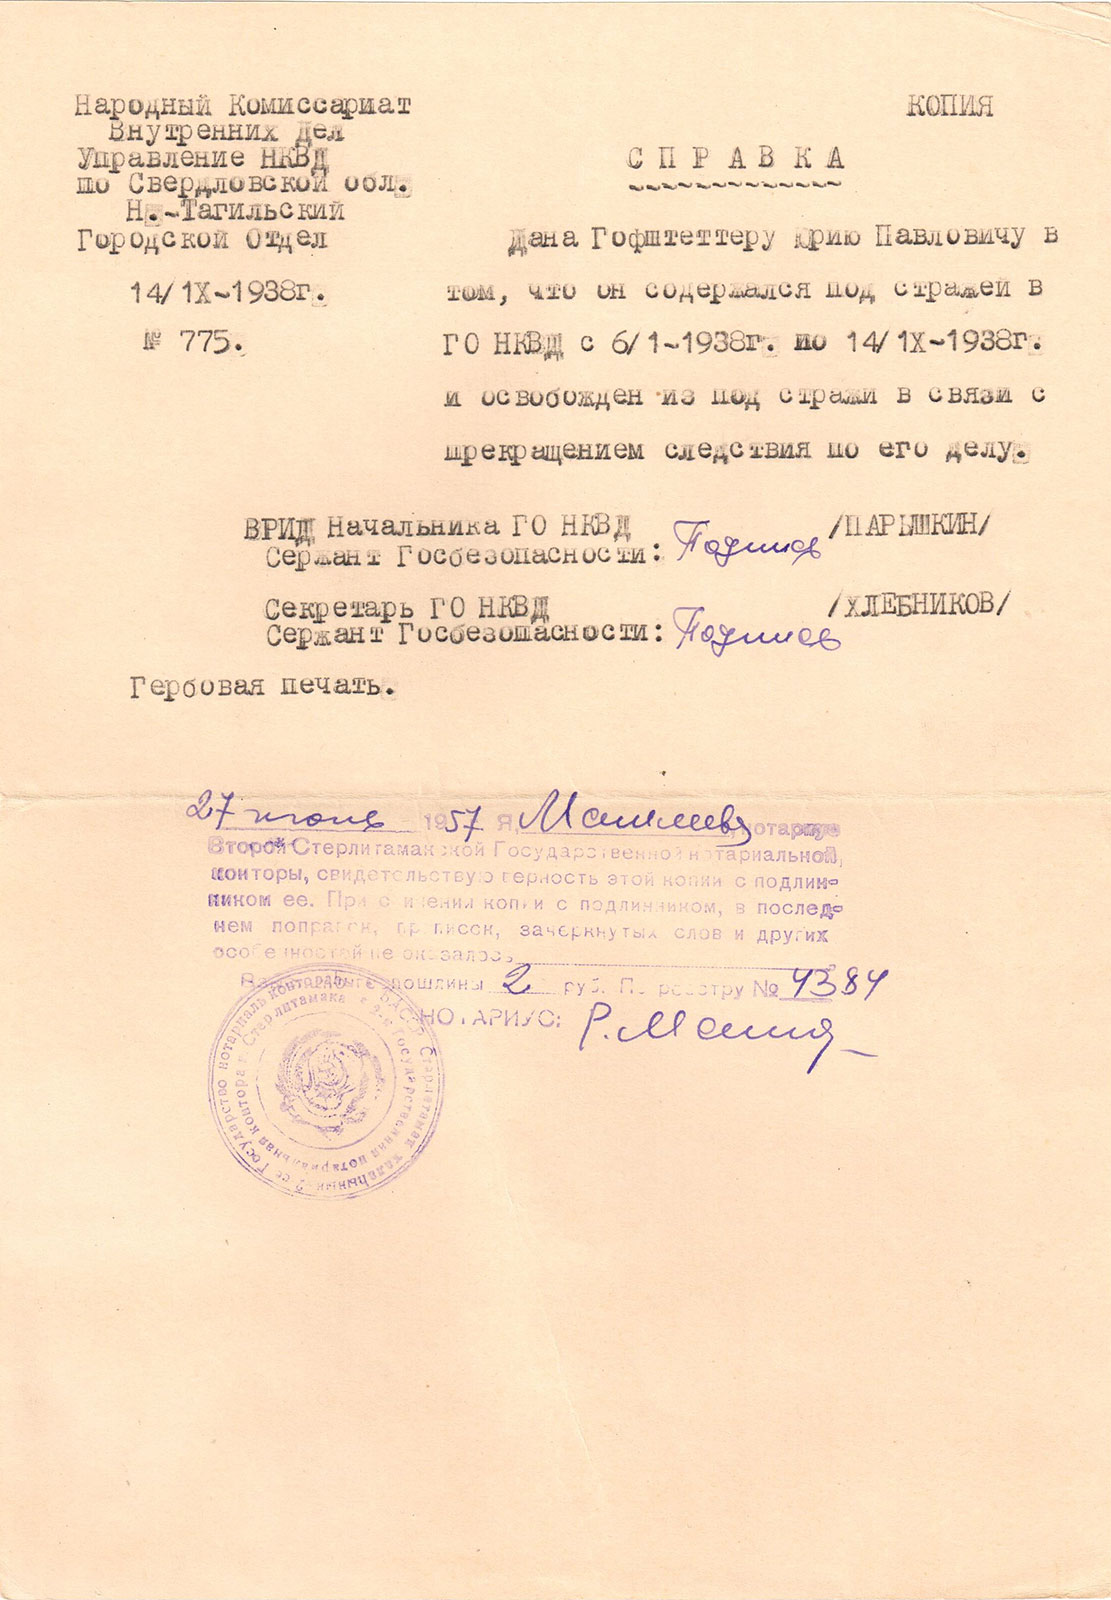 Справка НКВД о том, что Гофштеттер Юрий Павлович содержался под стражей